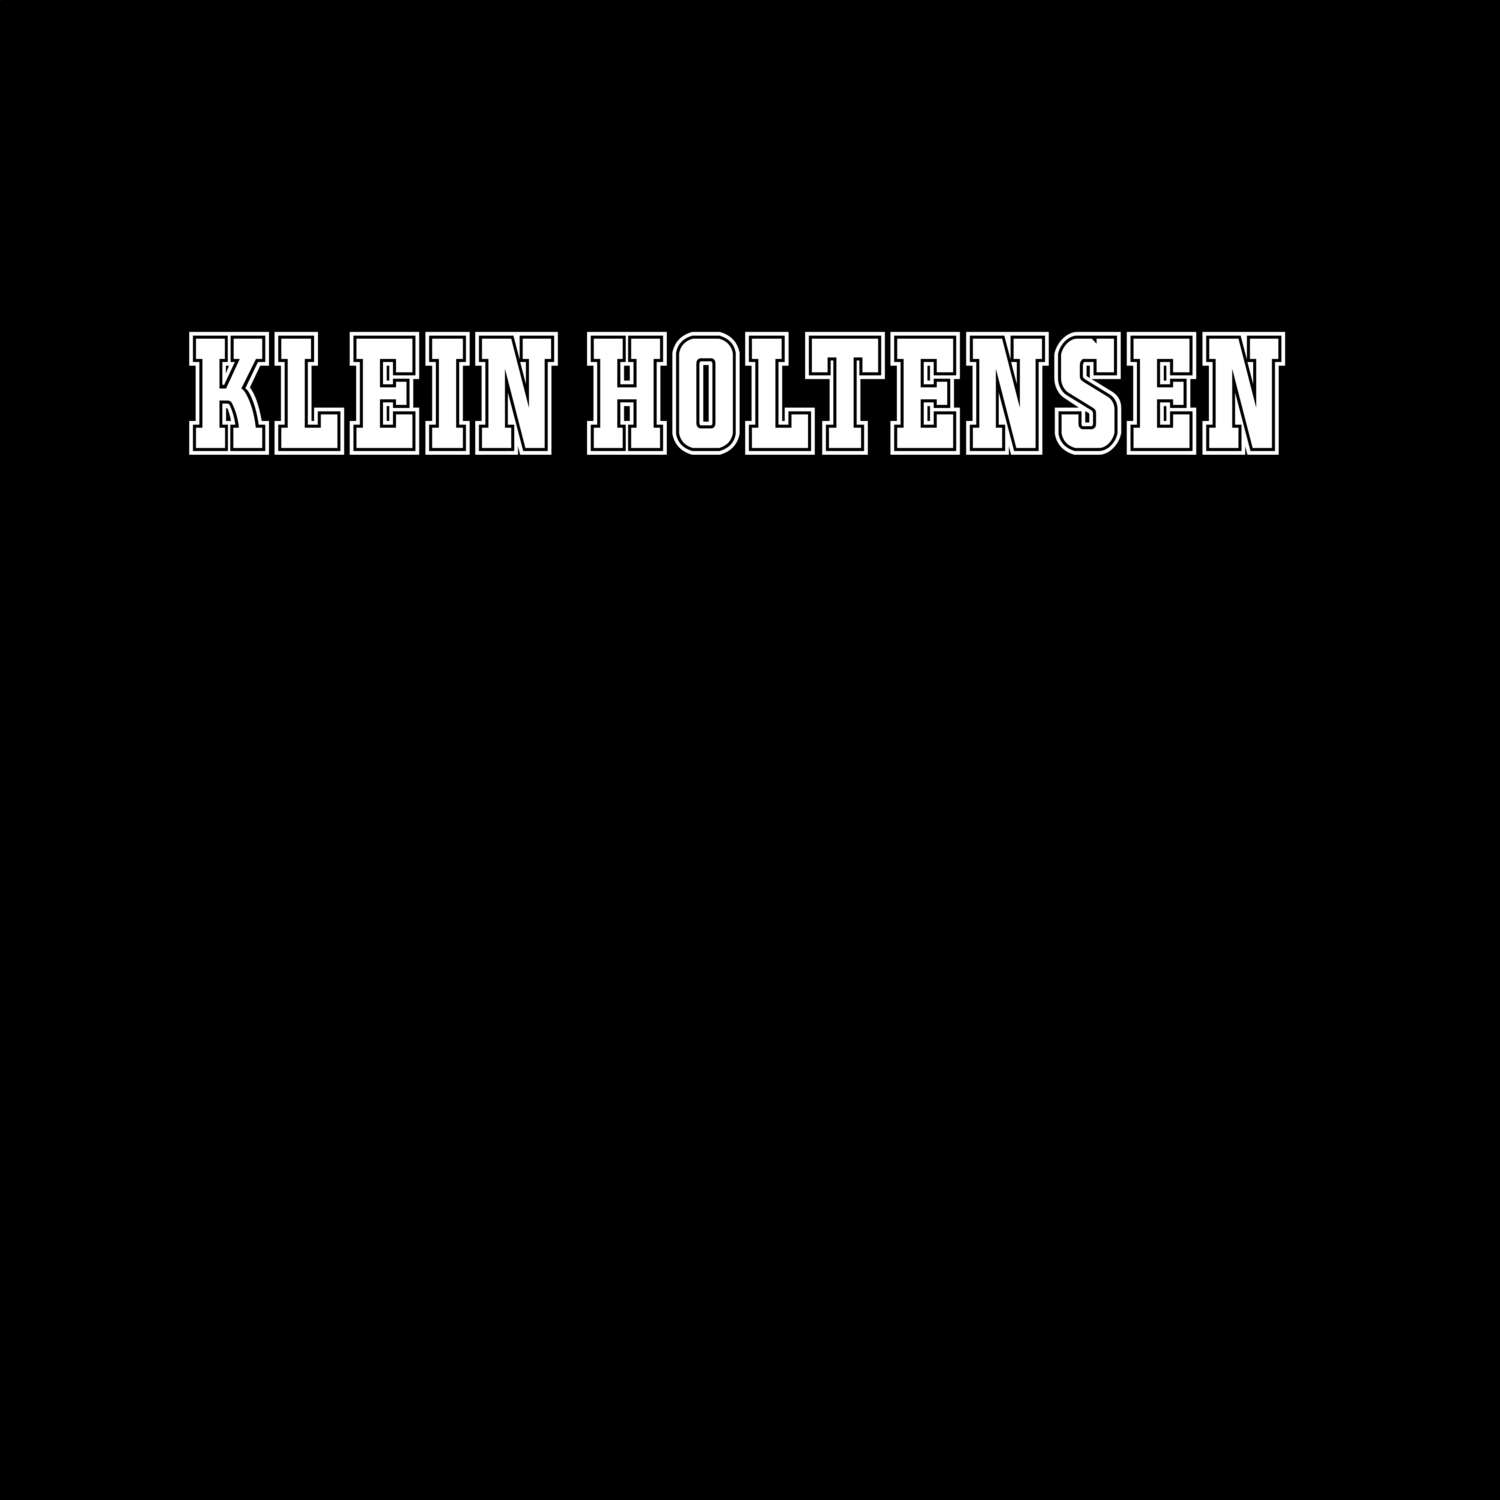 Klein Holtensen T-Shirt »Classic«